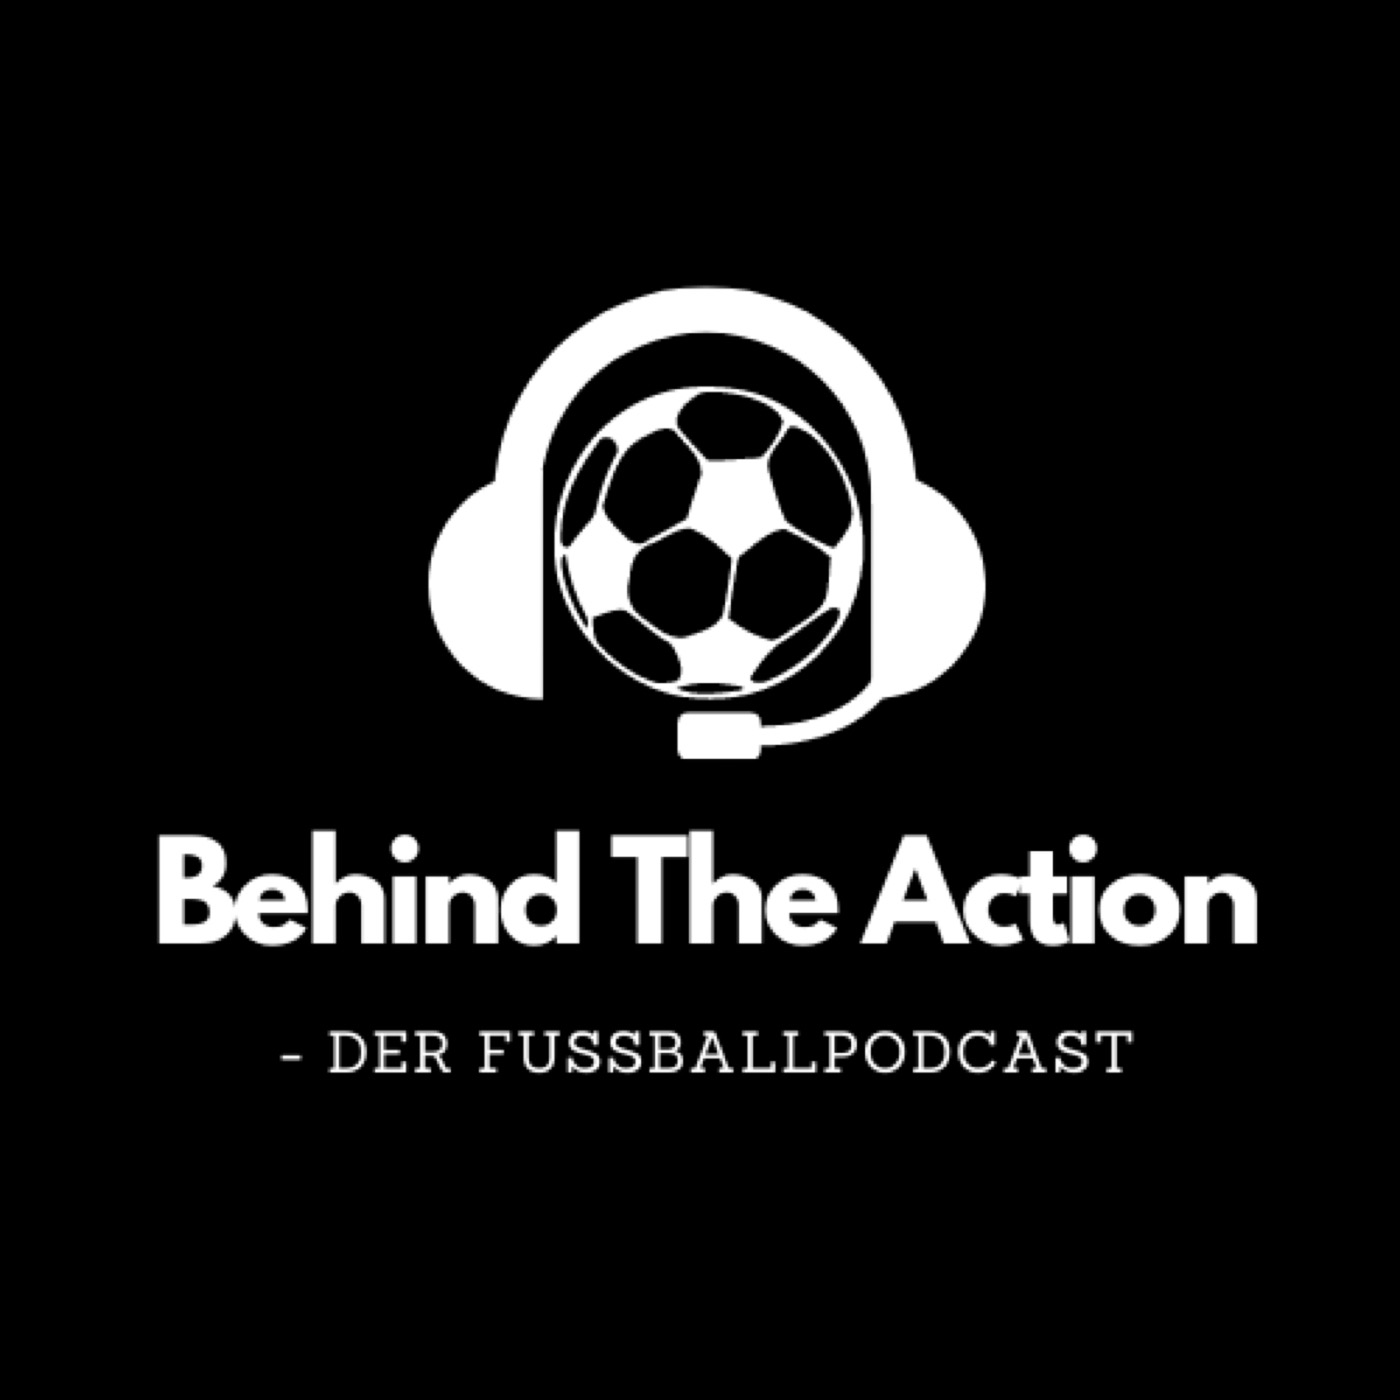 Behind The Action - Der Fußballpodcast by Yannik Zähringer